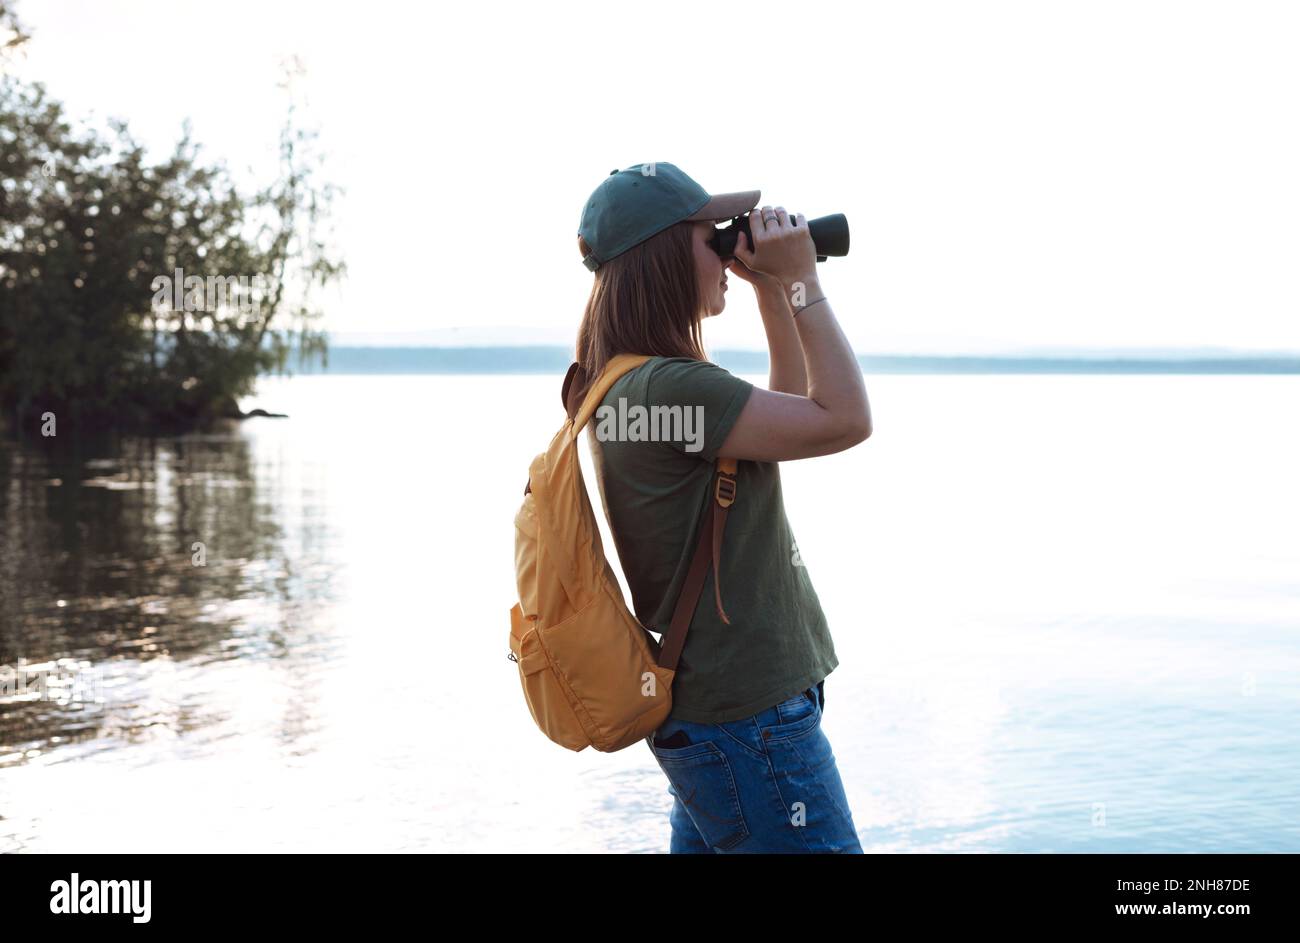 Junge Frau mit gelbem Rucksack, die durch ein Fernglas Vögel am See oder Fluss ansieht Vogelbeobachtung, Zoologie, Ökologie Forschung in der Natur, Beobachtung o Stockfoto